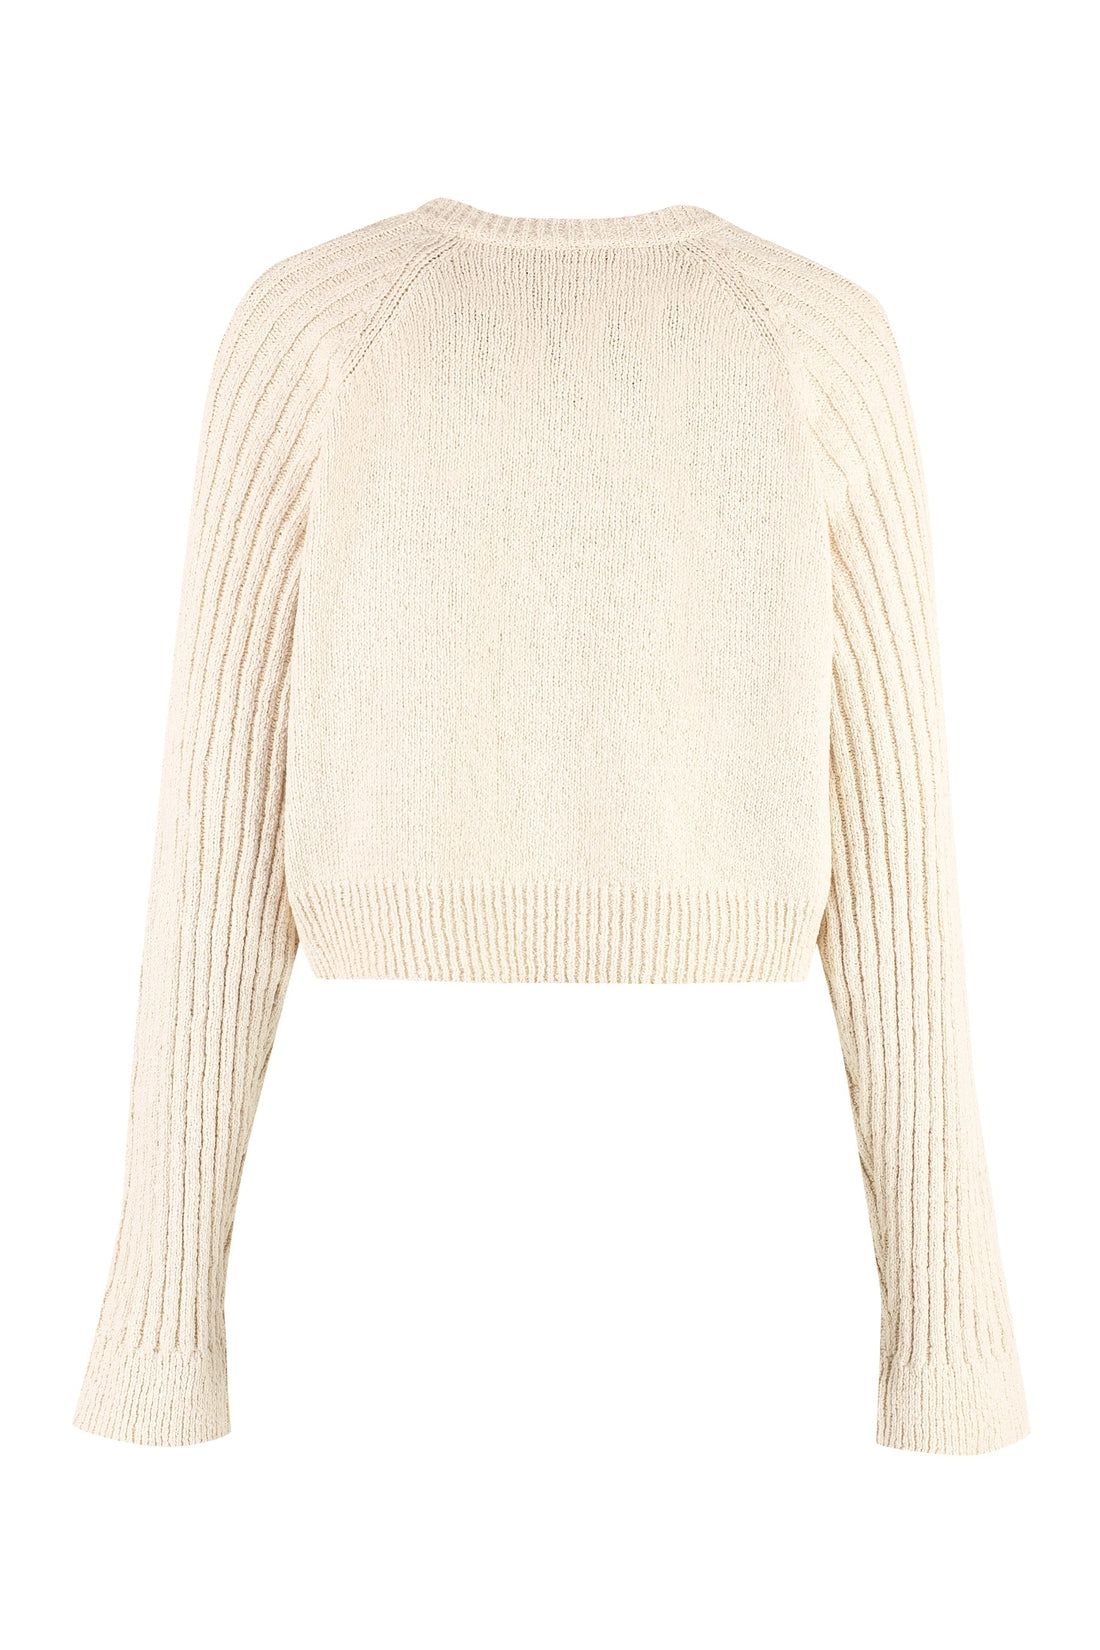 Balmain-OUTLET-SALE-Cotton-blend sweater-ARCHIVIST